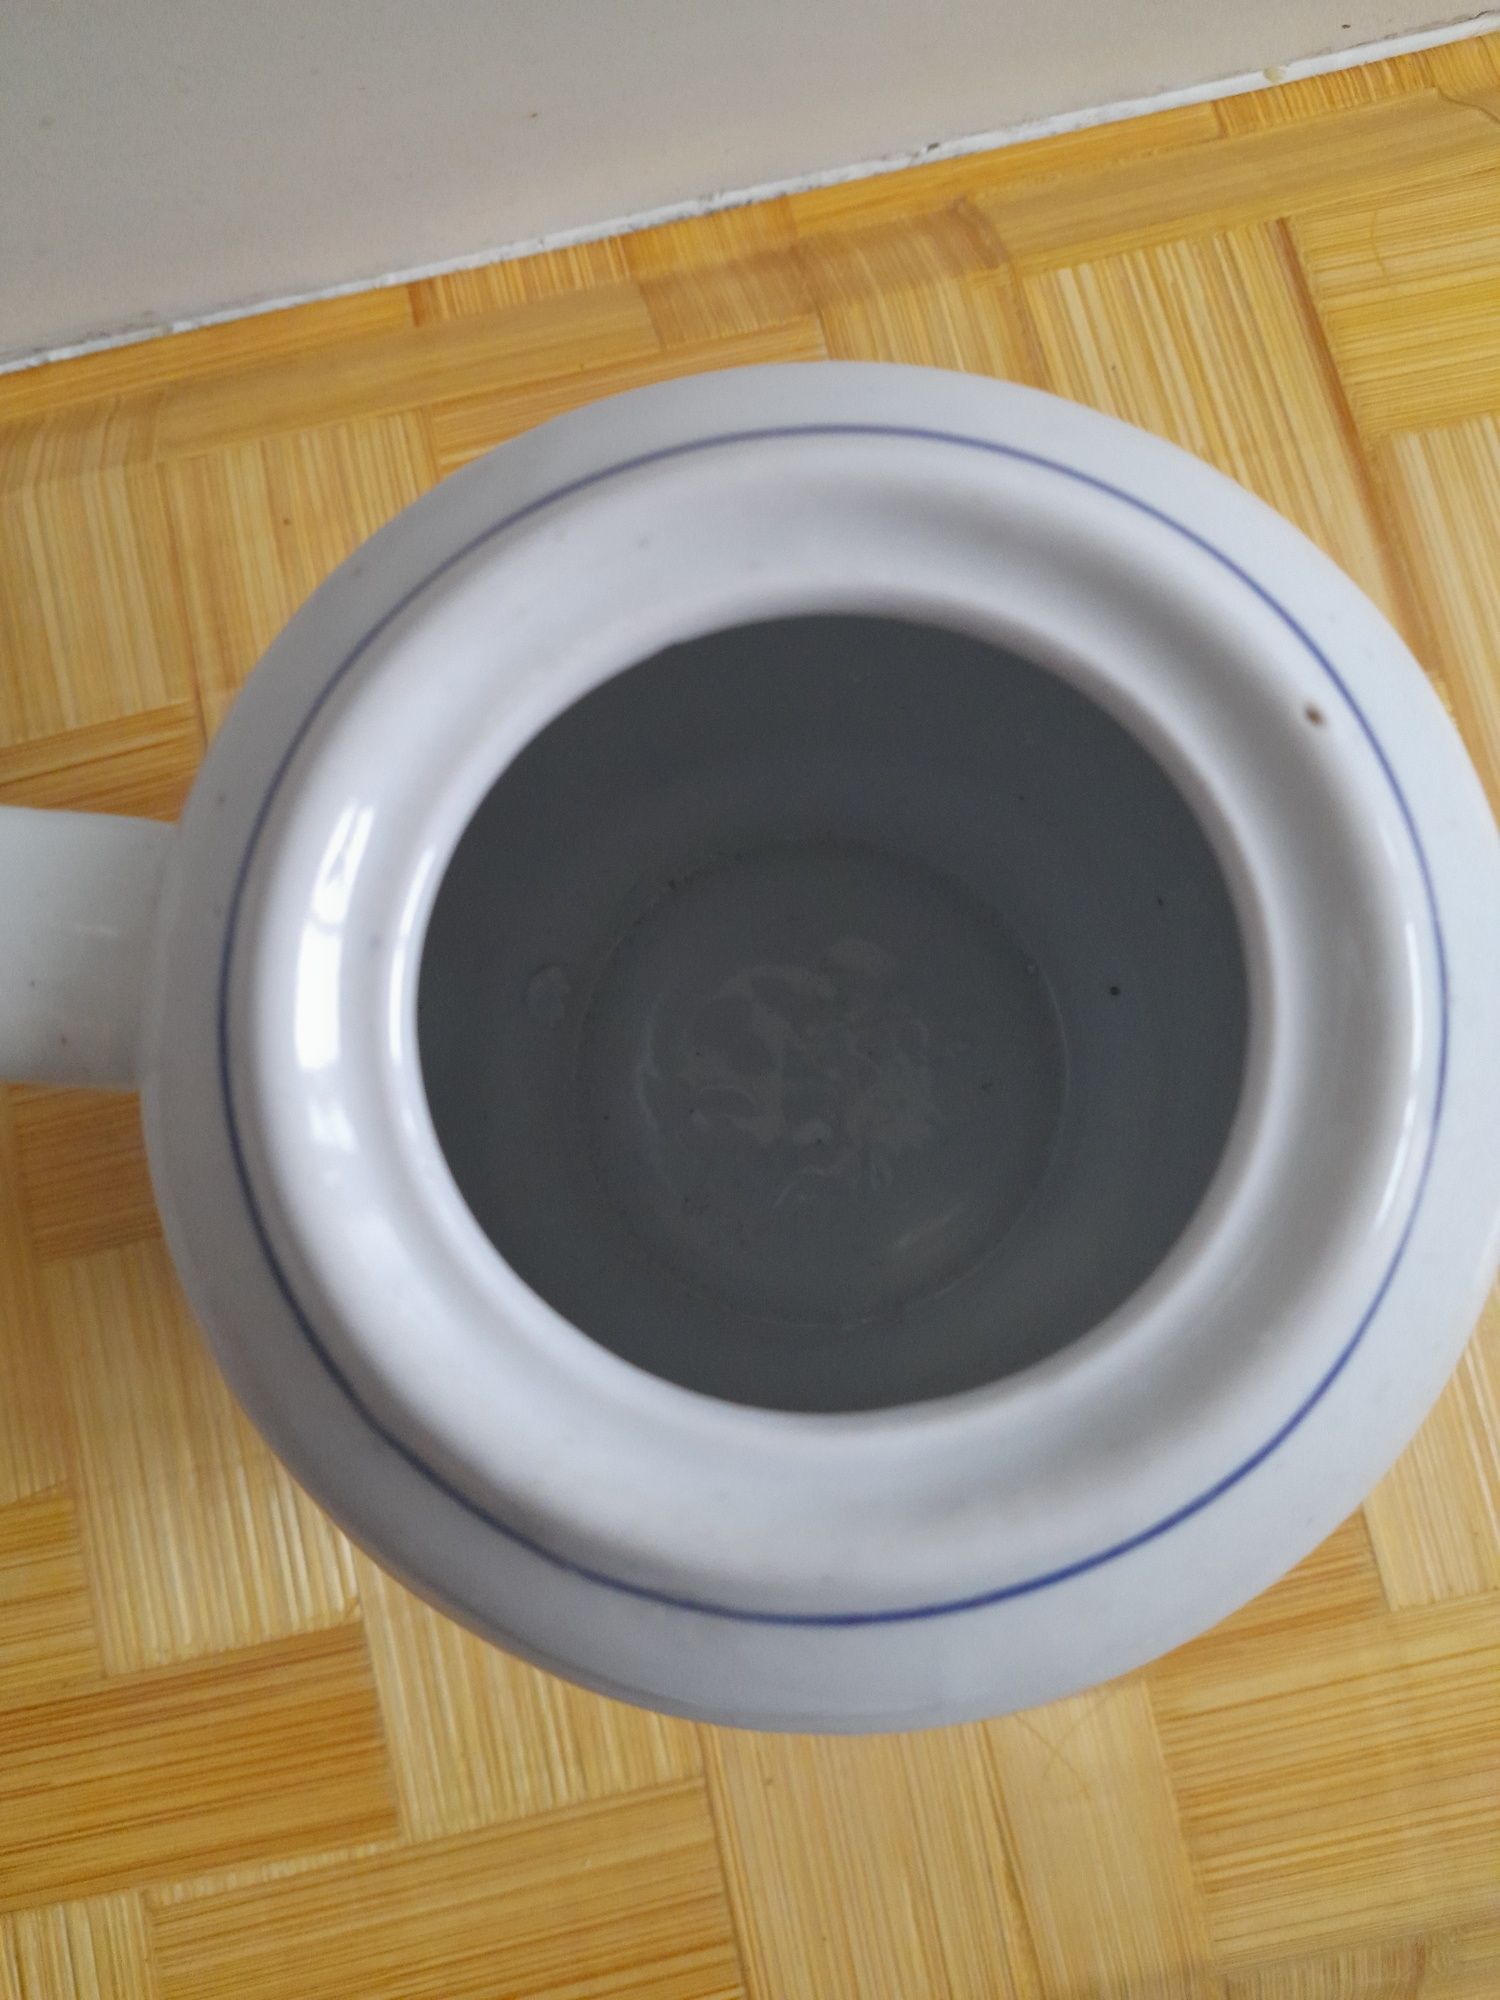 Bule de chá Chaleira em porcelana cerâmica